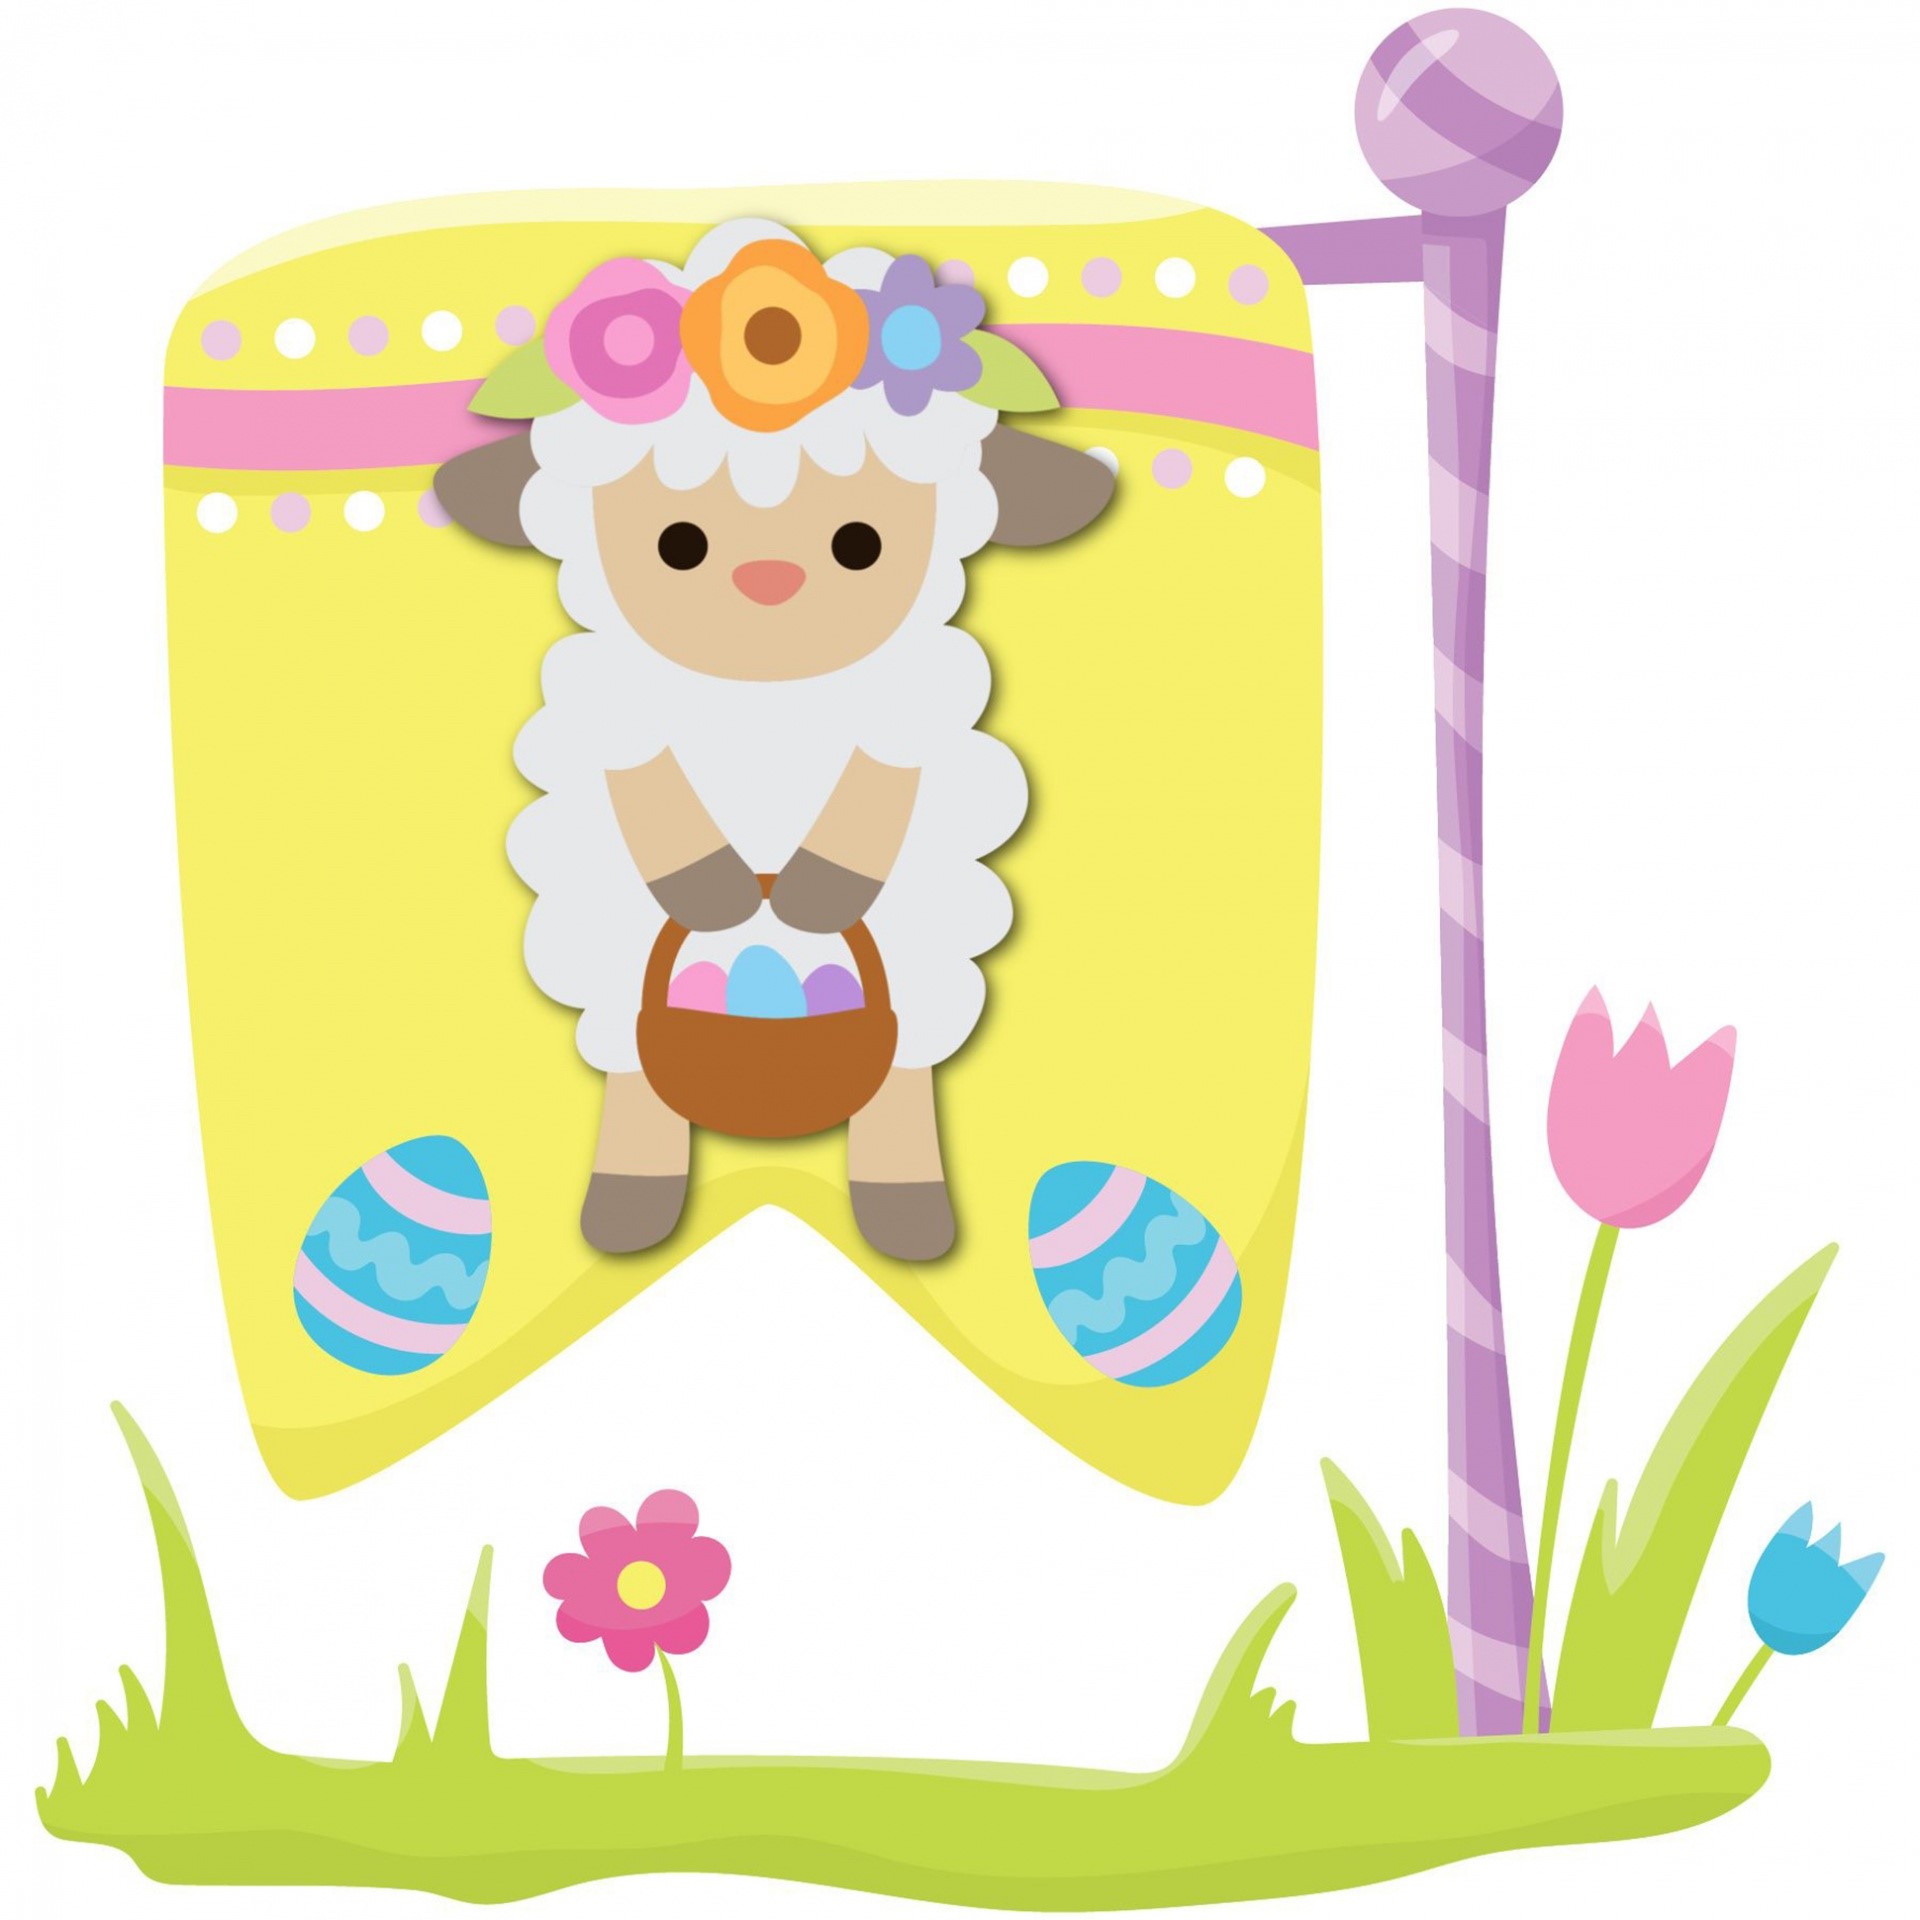 Cartoon image of an Easter Lamb